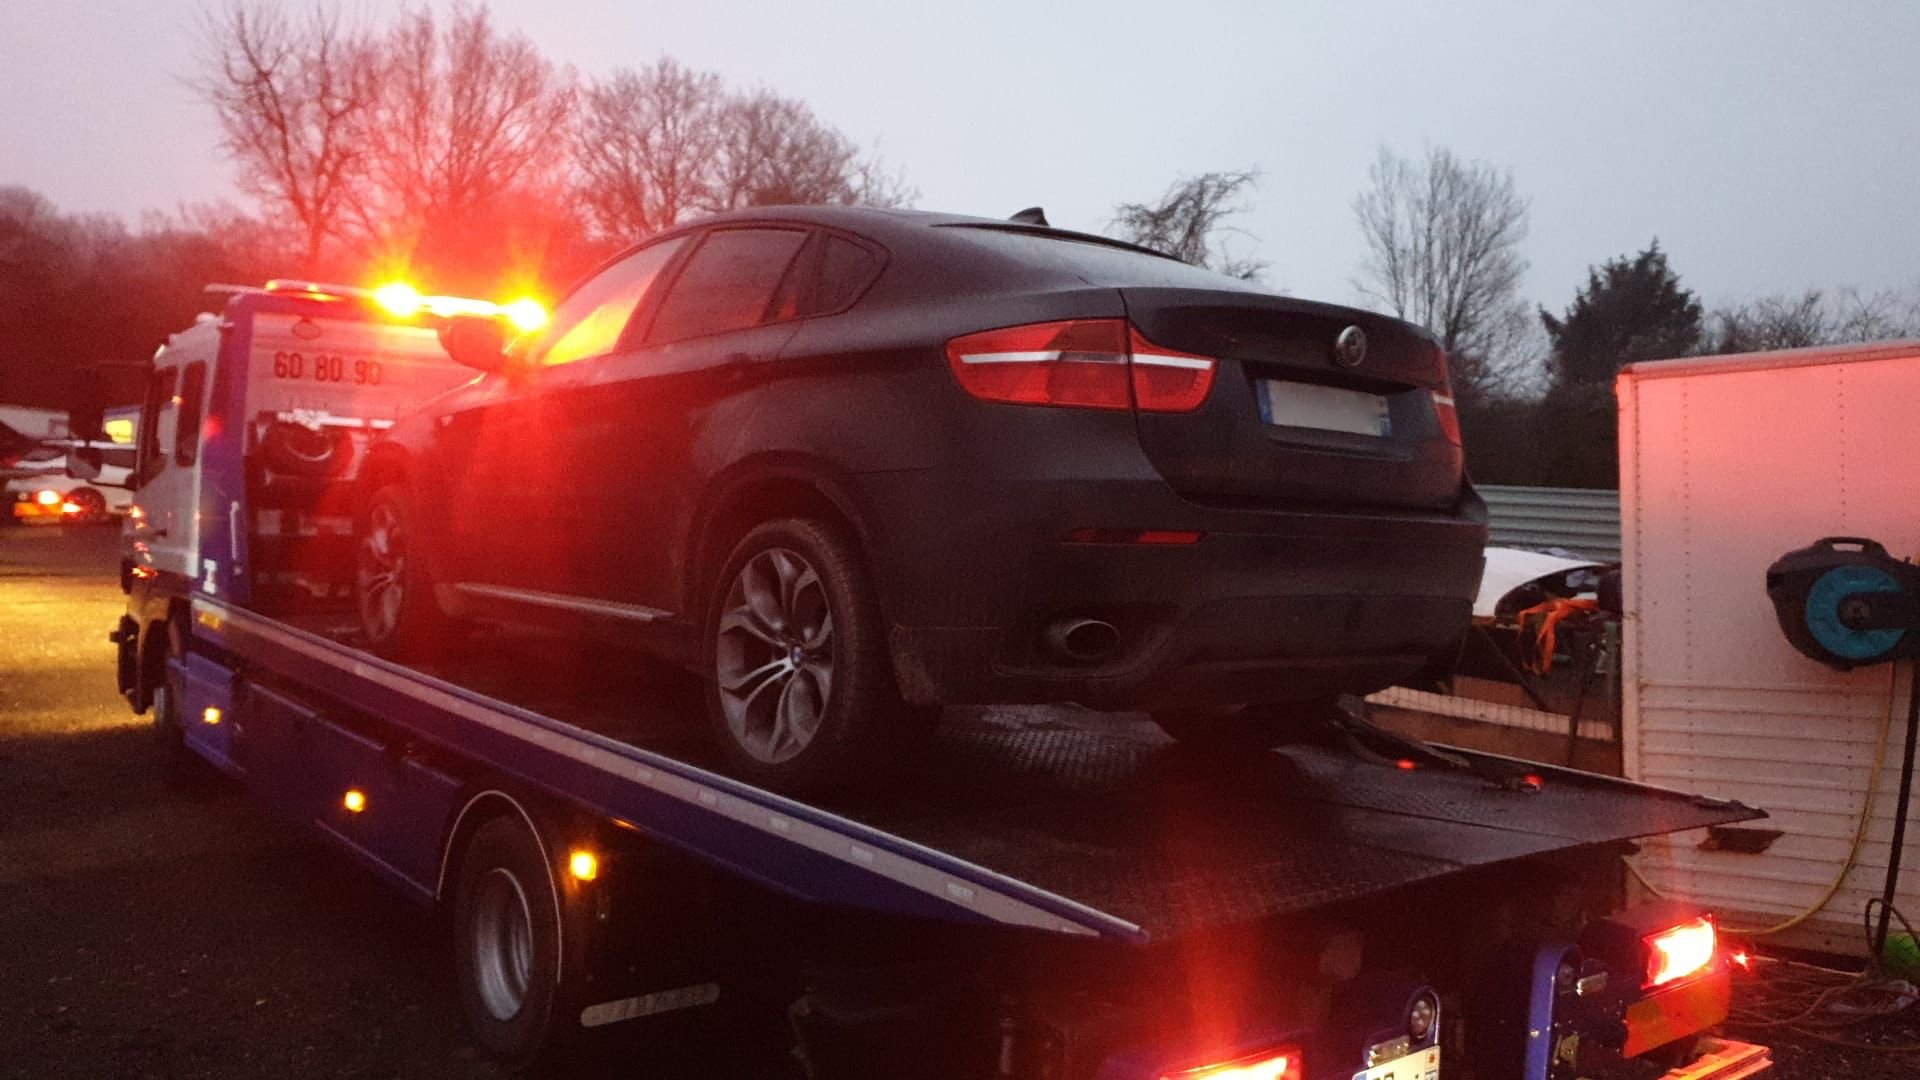 Seine-et-Marne, janvier 2022 : Les gendarmes avaient retrouvé plusieurs voitures volées. DR